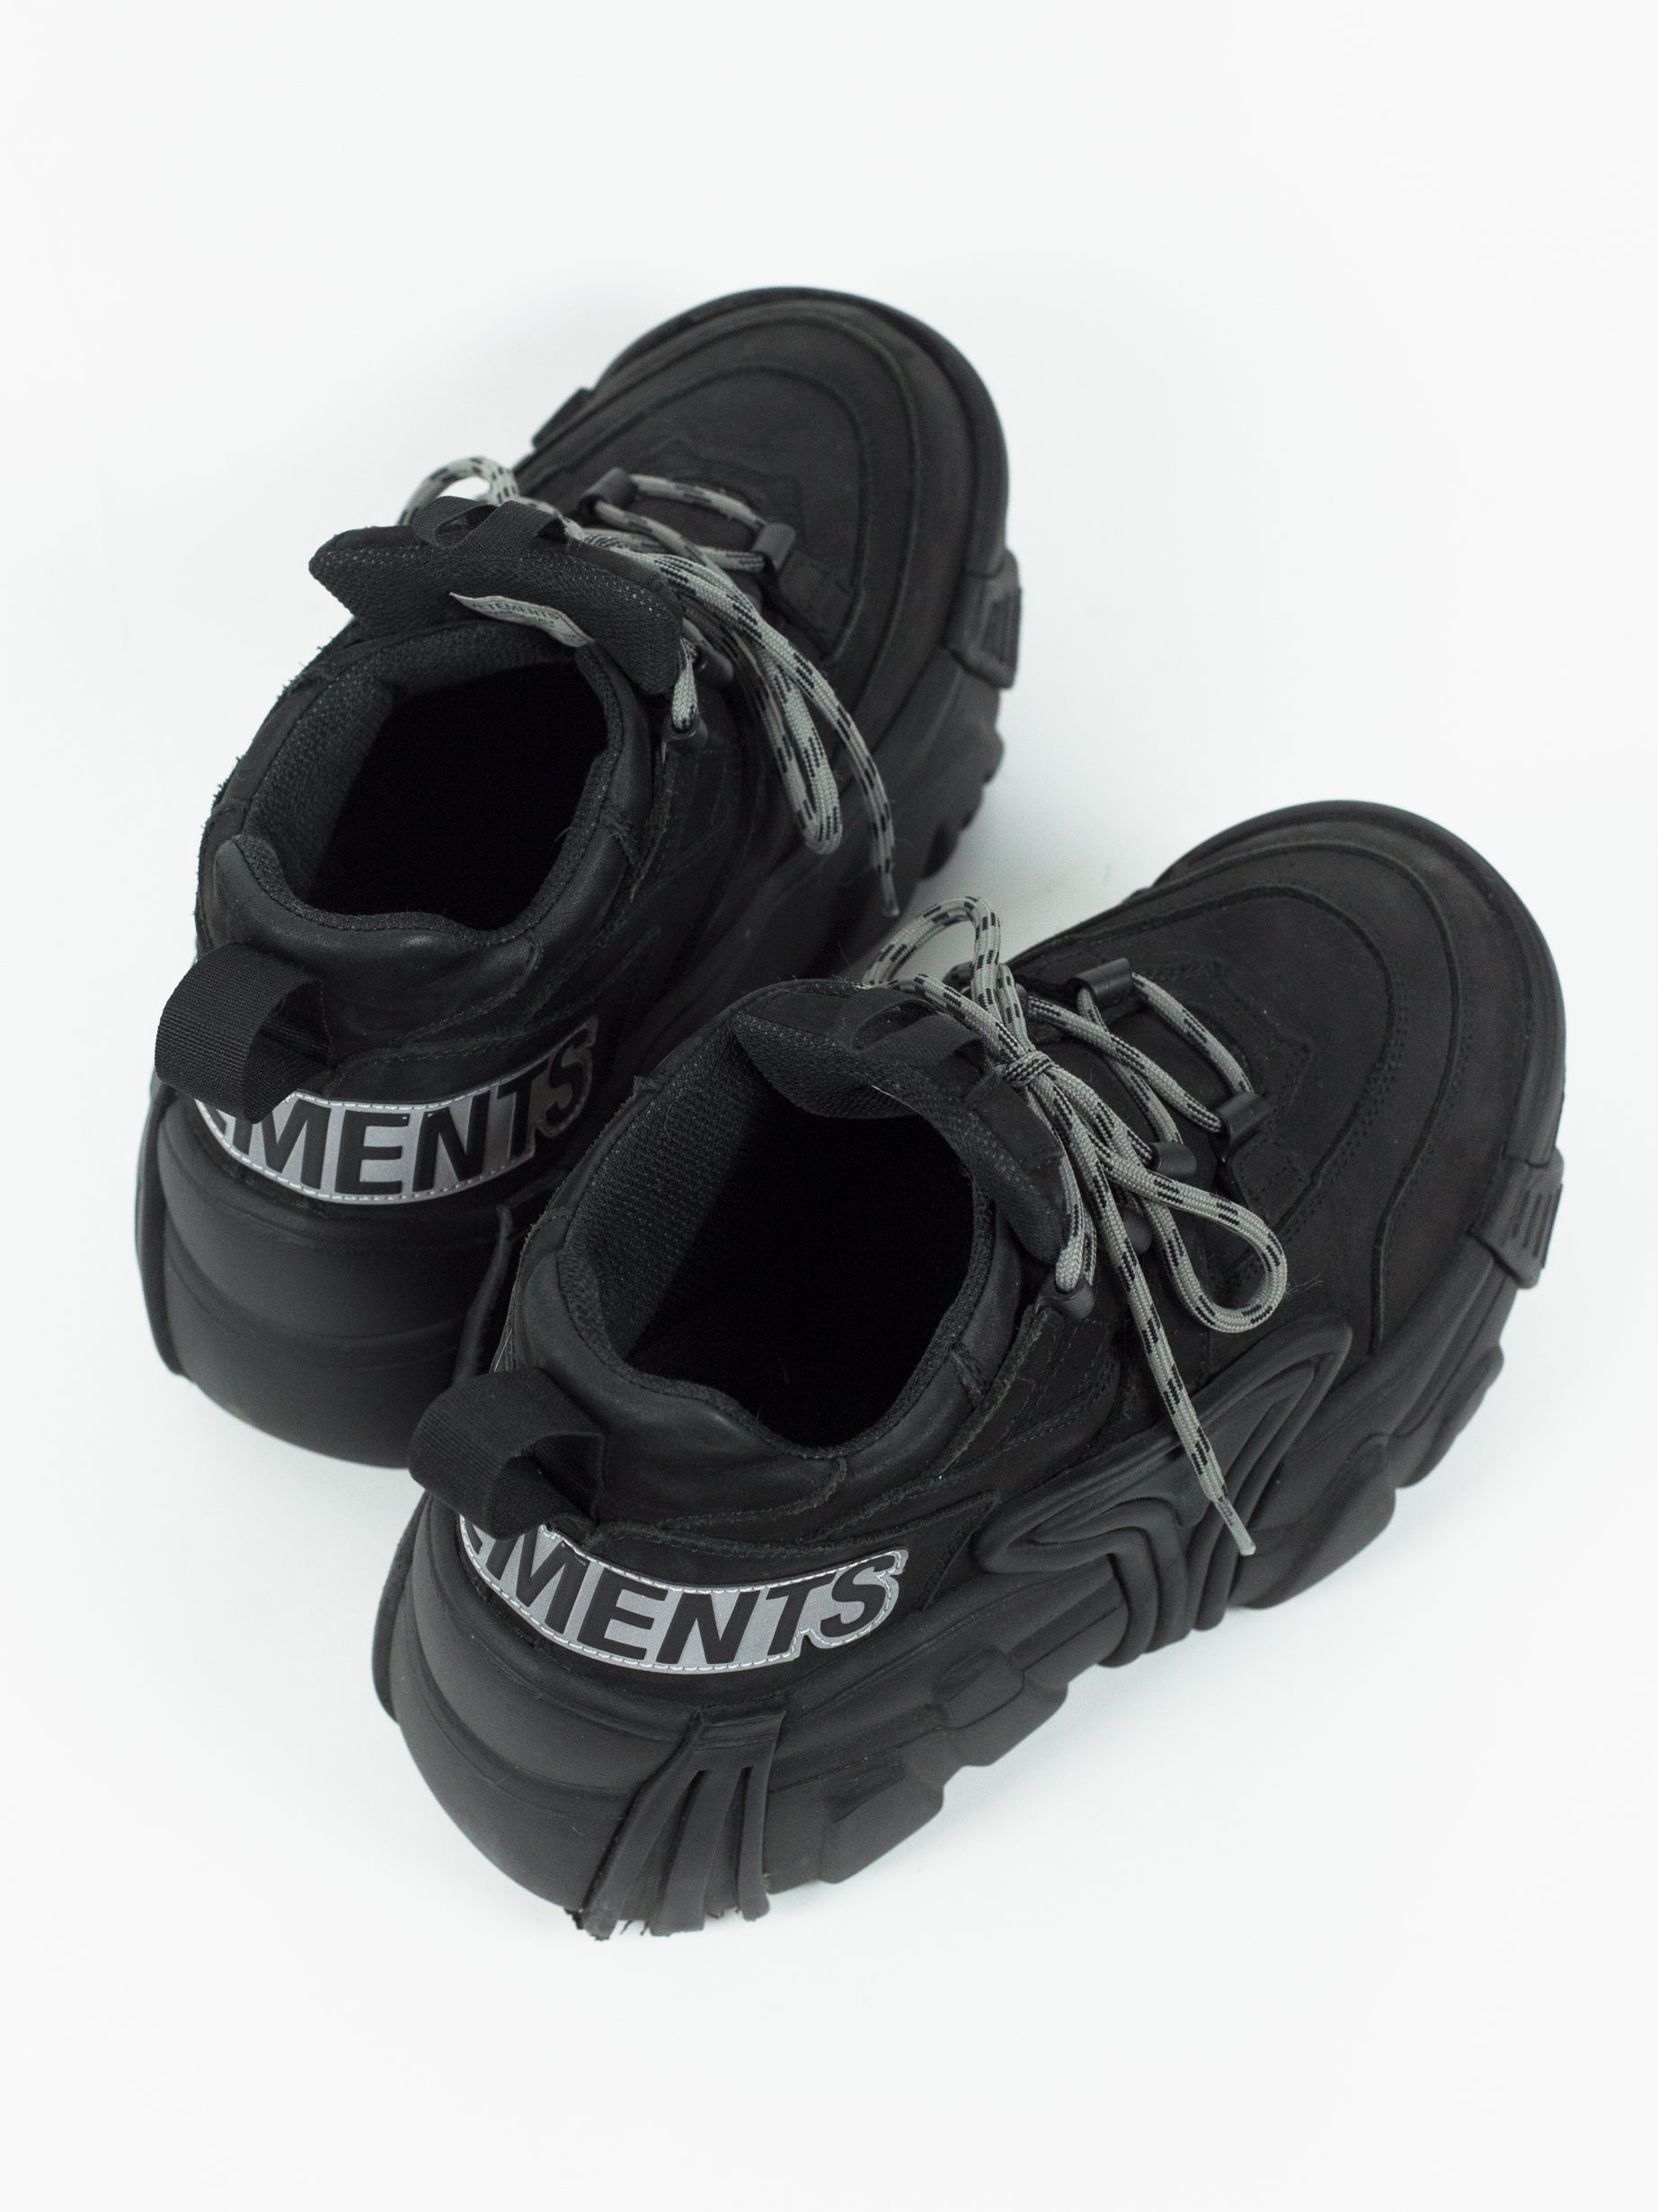 Vetements x Swear Beige Nubuck Platform Sneakers Size 42 Vetements